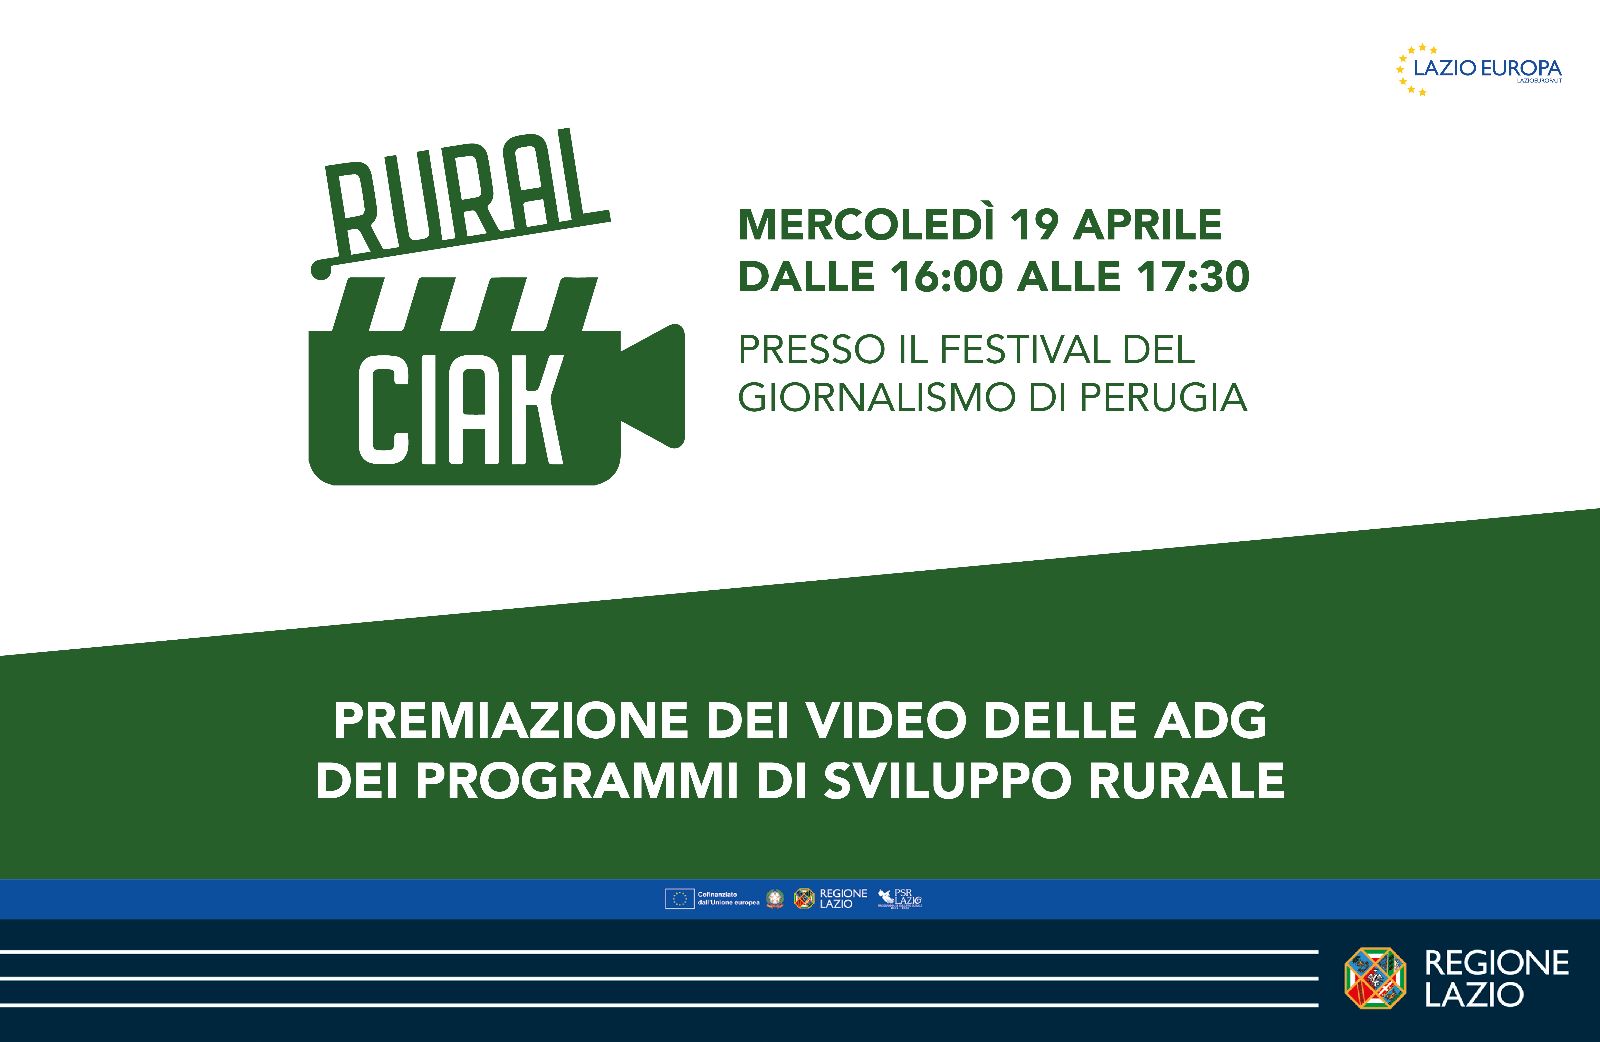 La Regione Lazio partecipa a RuralCiak